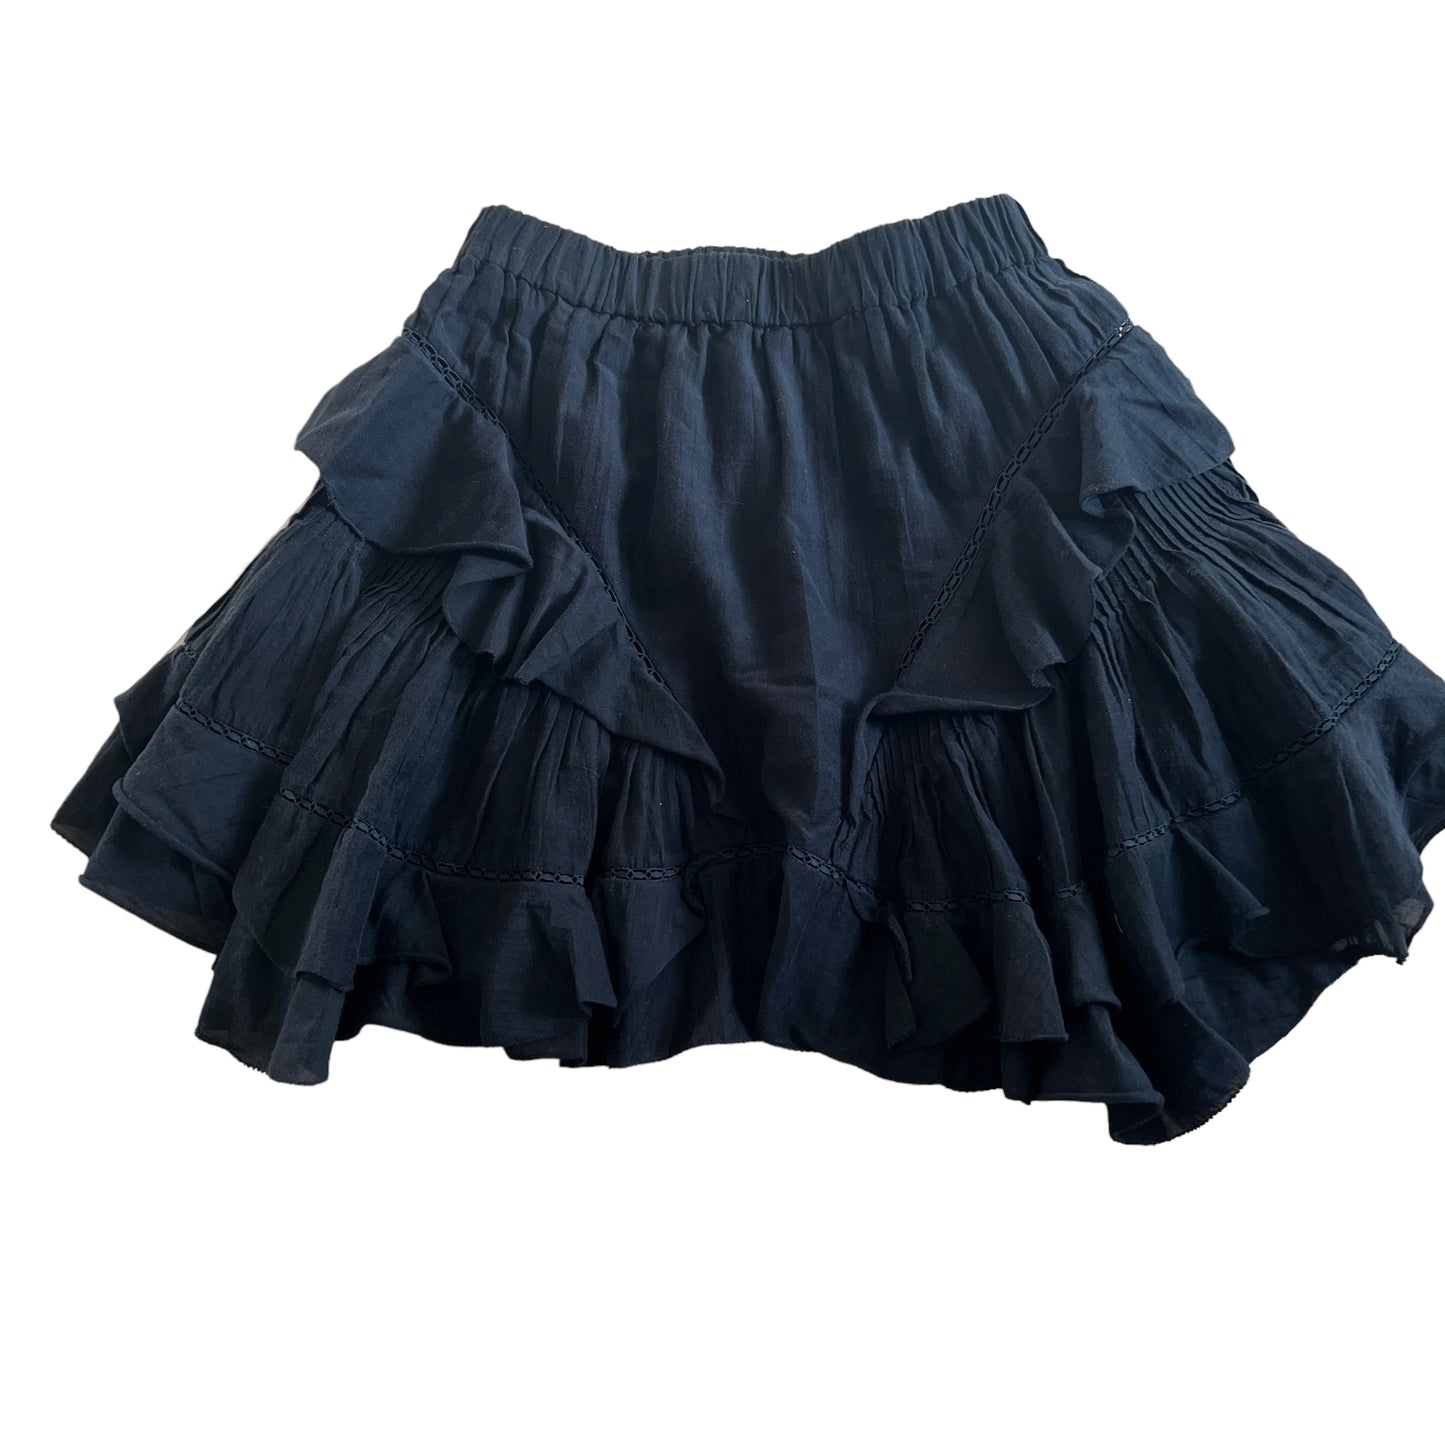 Black Ruffled Skirt - S/M